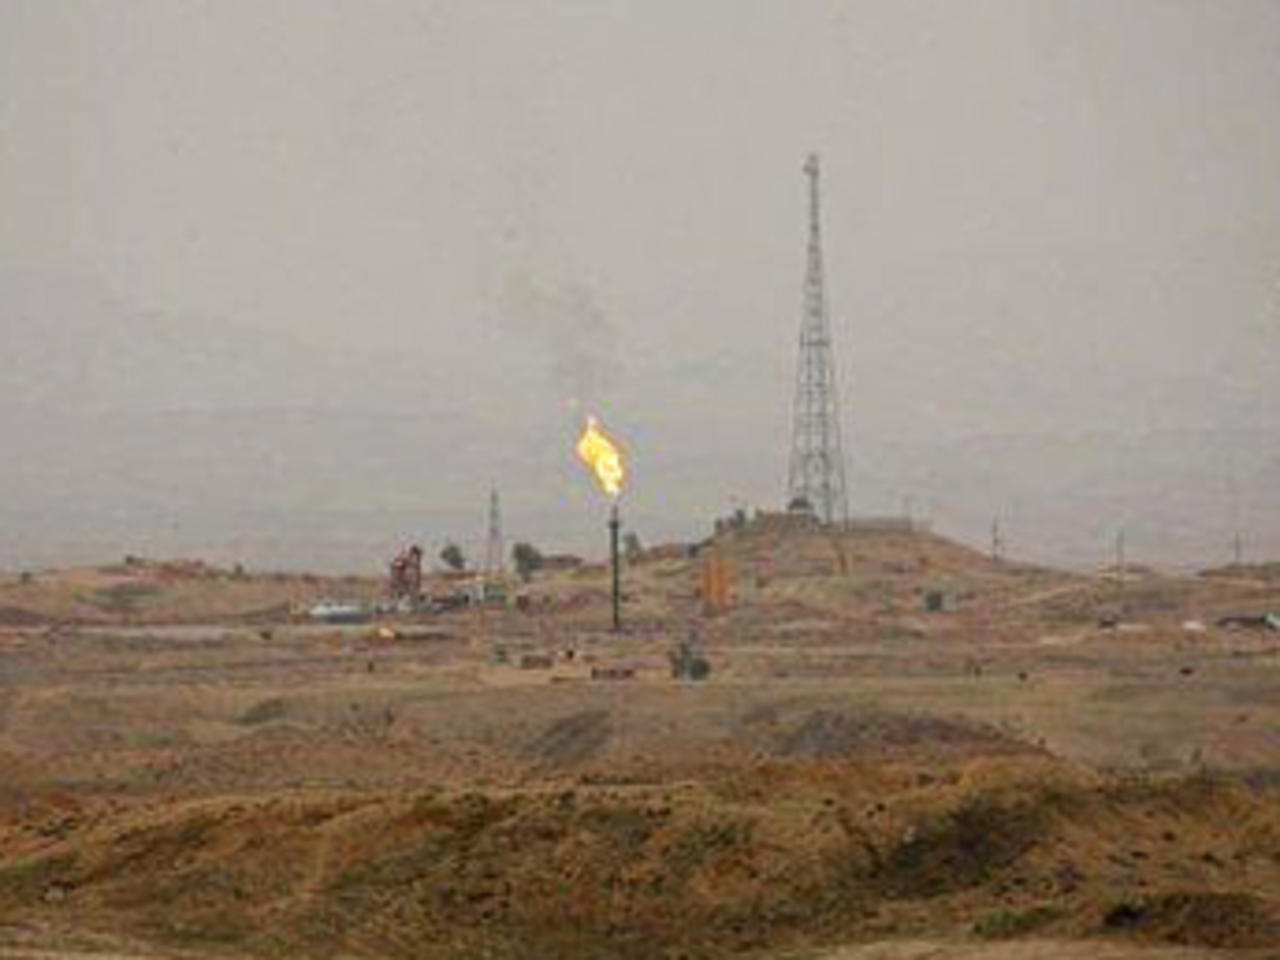 إيران تسرق النفط العراقي بدعم من شيعة السلطة تحت عنوان “الحقول المشتركة!!